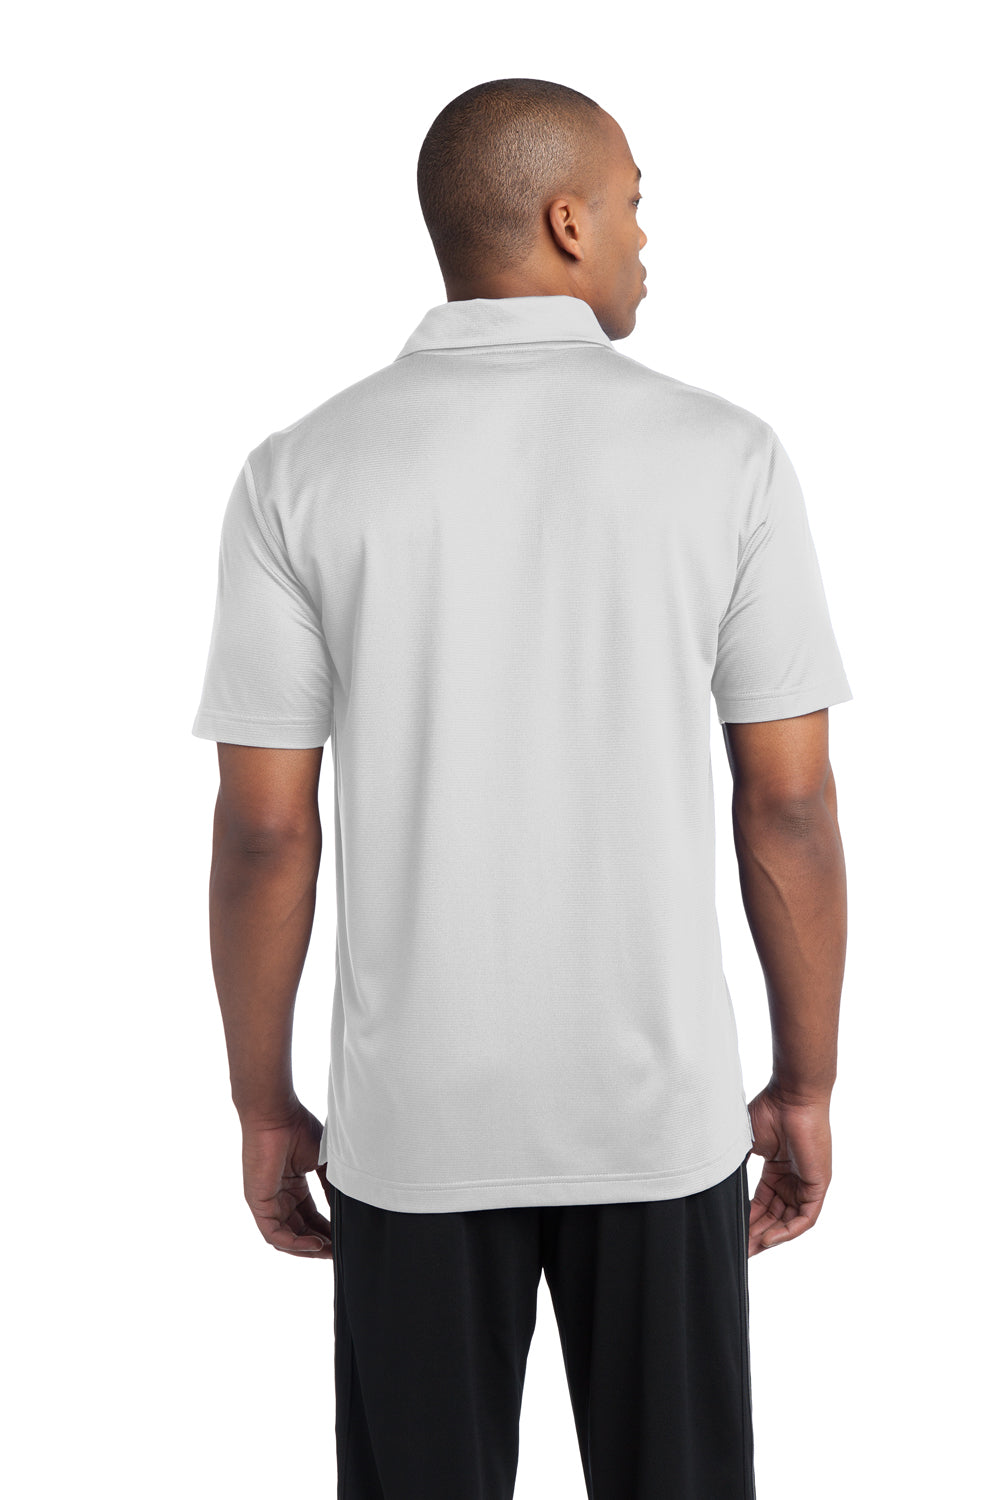 Sport-Tek ST690 Mens Active Mesh Moisture Wicking Short Sleeve Polo Shirt White Back